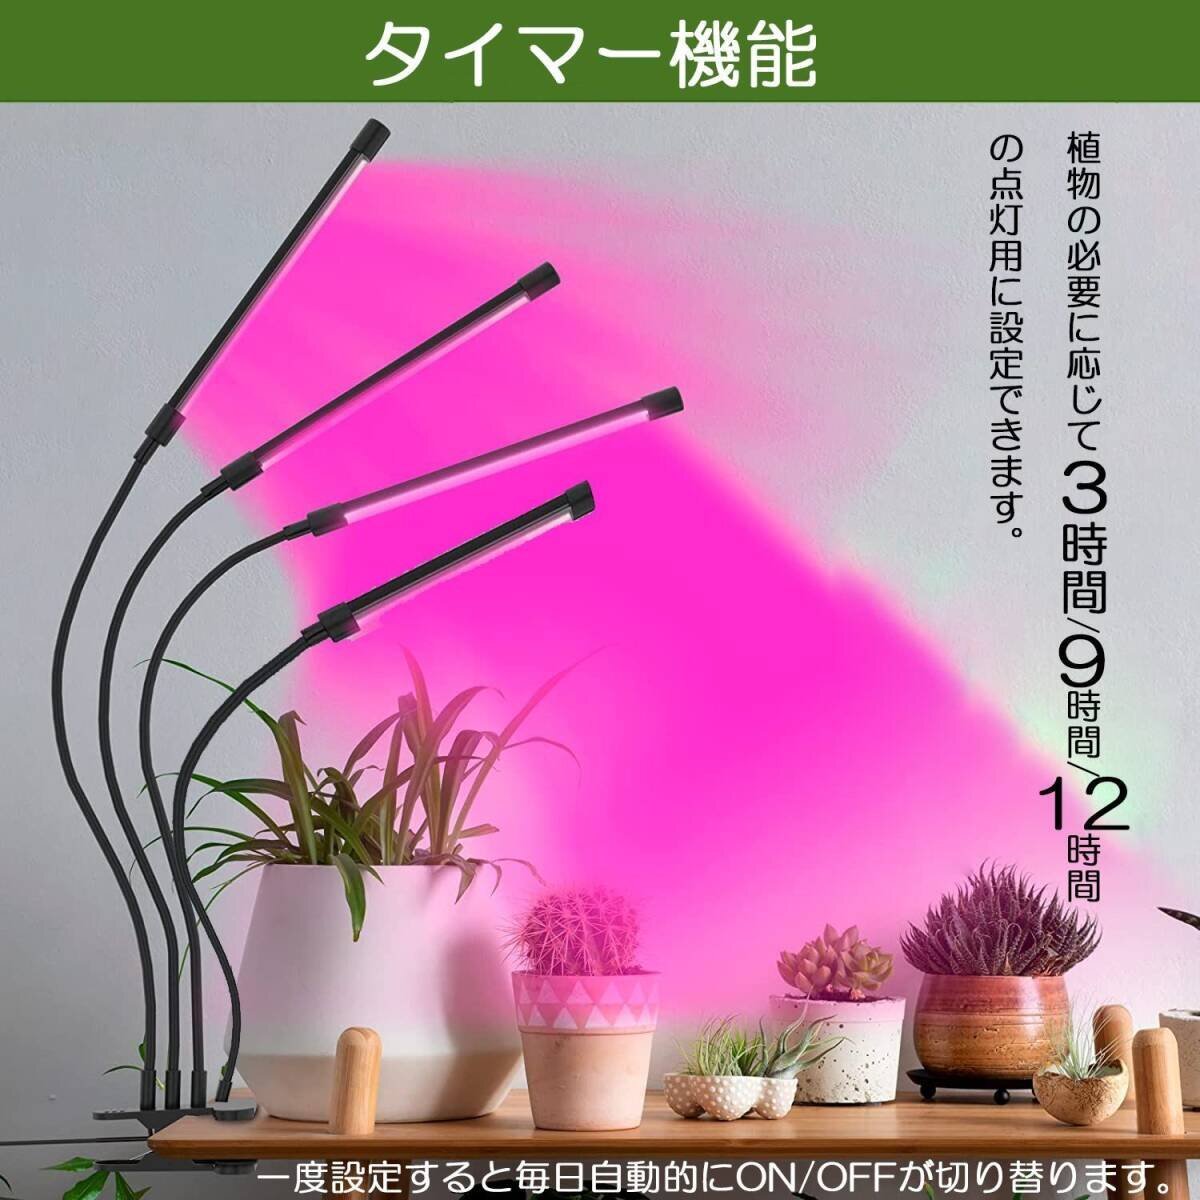 植物育成ライト 植物育成 LED植物育成灯 室内栽培 3つ照明モード 9段階調光 観葉植物 4ヘッド式ライト タイマー付き 360°調節可能_画像9